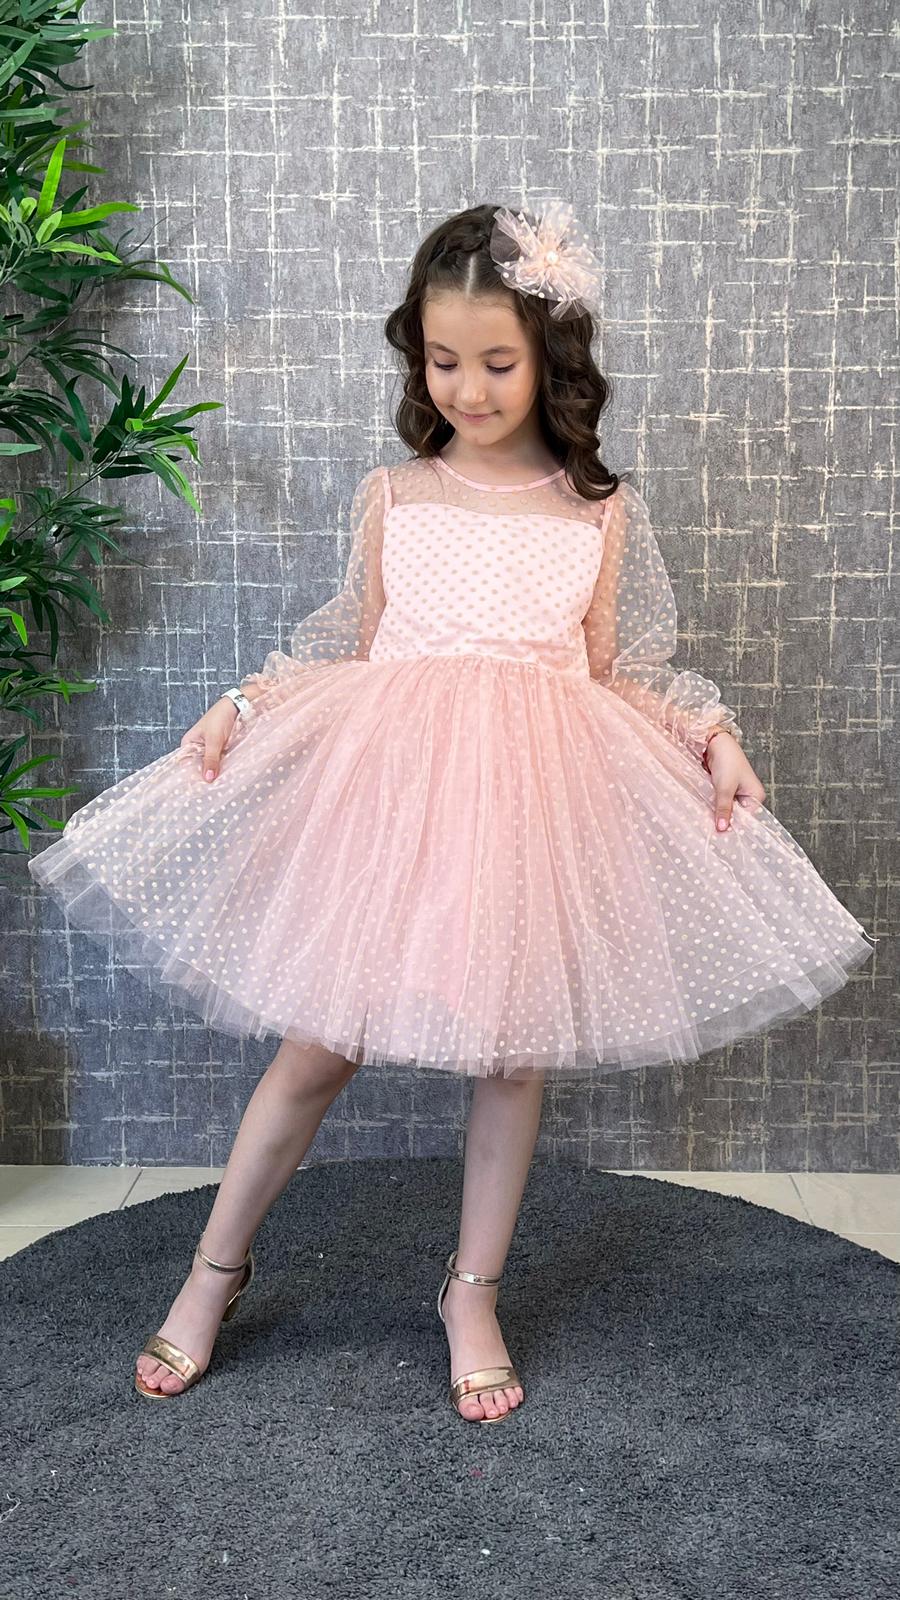 Polka Dot Tulle Dress / 2-5Y | 6-9Y - Kids Fashion Turkey